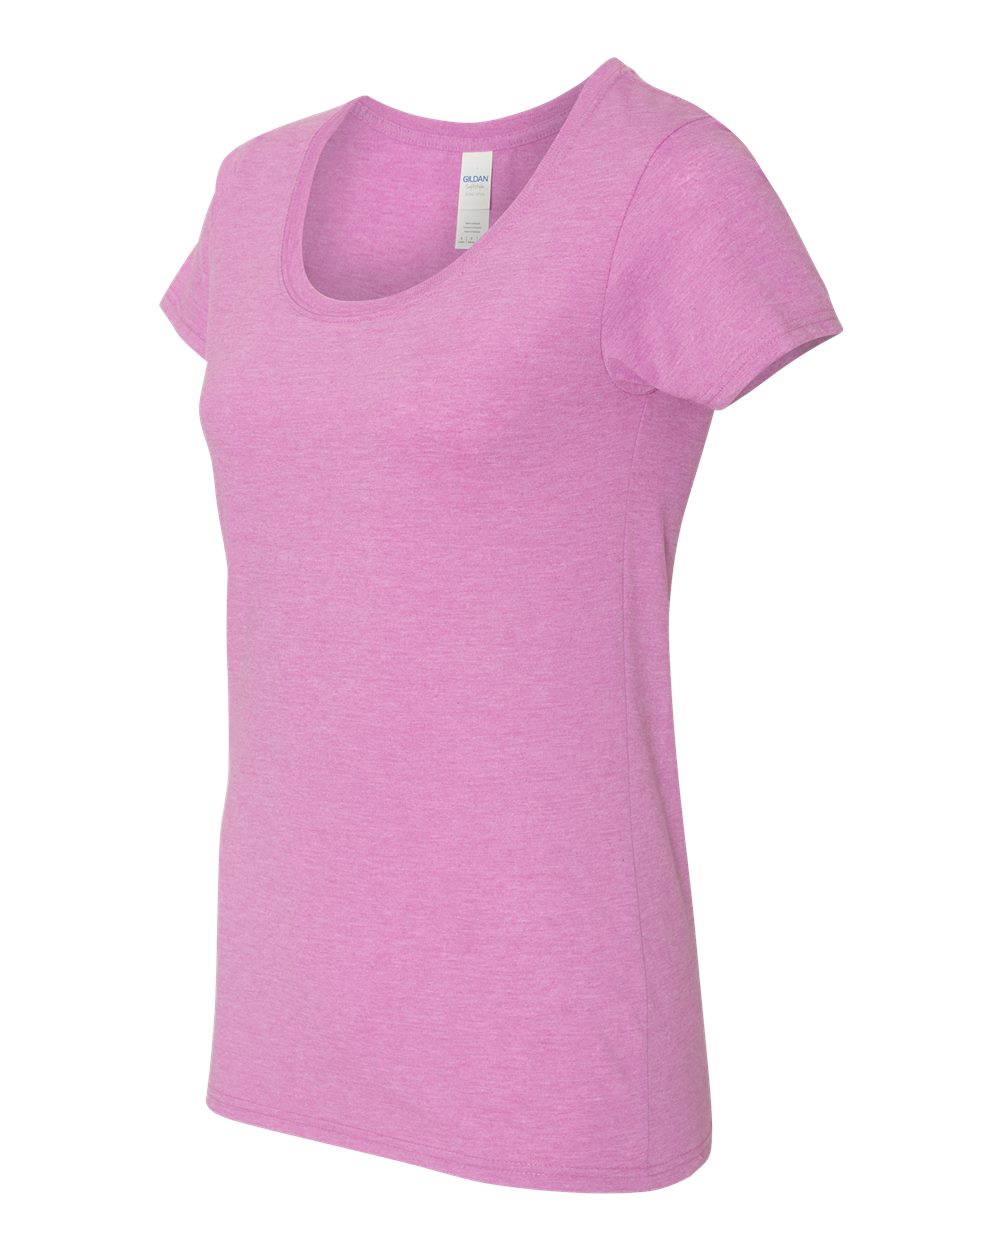 Gildan 64550L - Softstyle Women's Deep Scoopneck T-Shirt $3.68 - Women ...